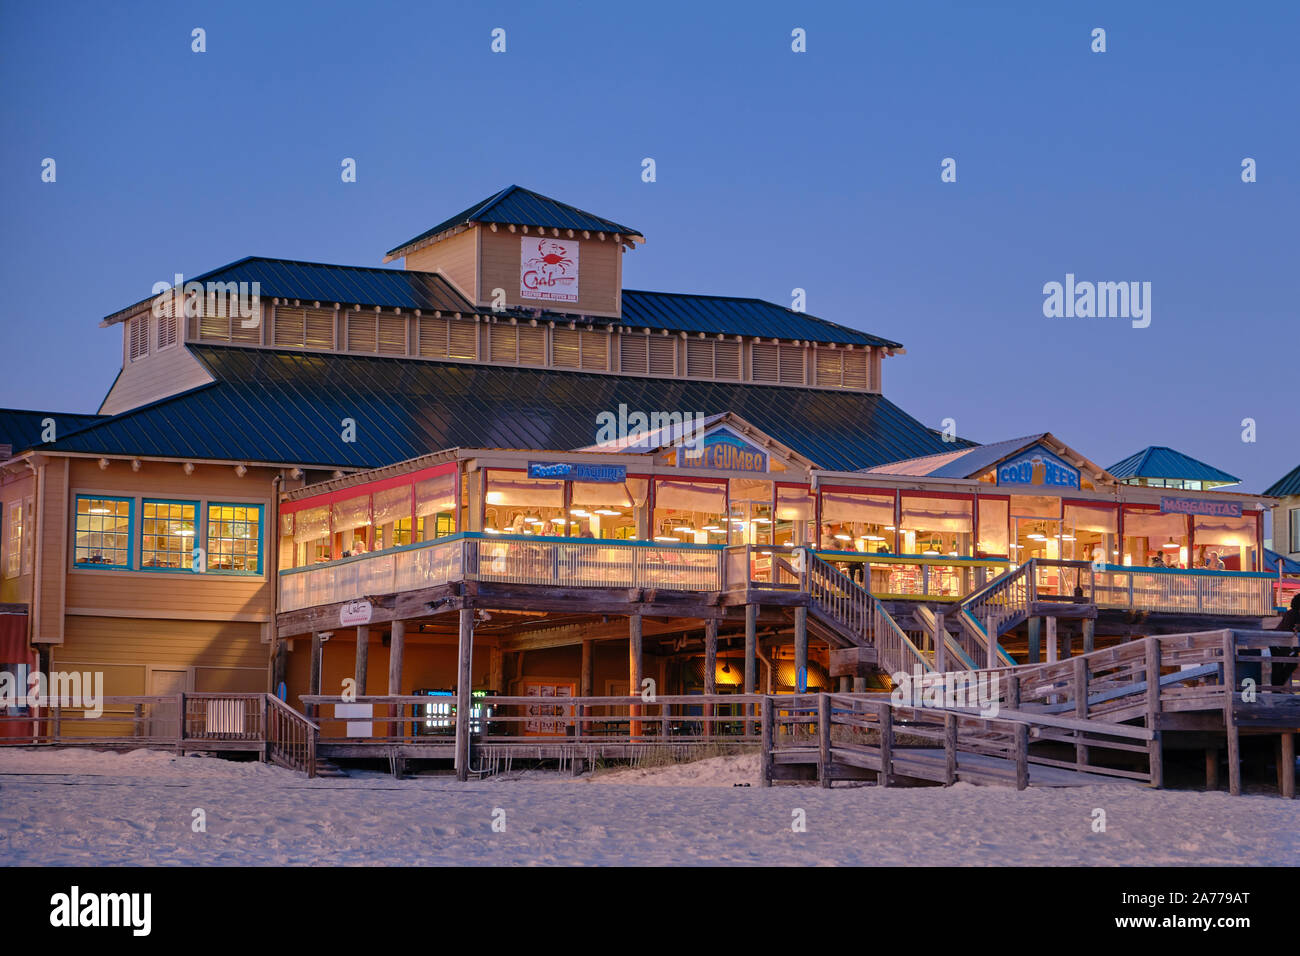 La trampa de cangrejo beach bar y restaurante de mariscos en la playa por la noche en la isla de Okaloosa, Florida, EE.UU. Foto de stock